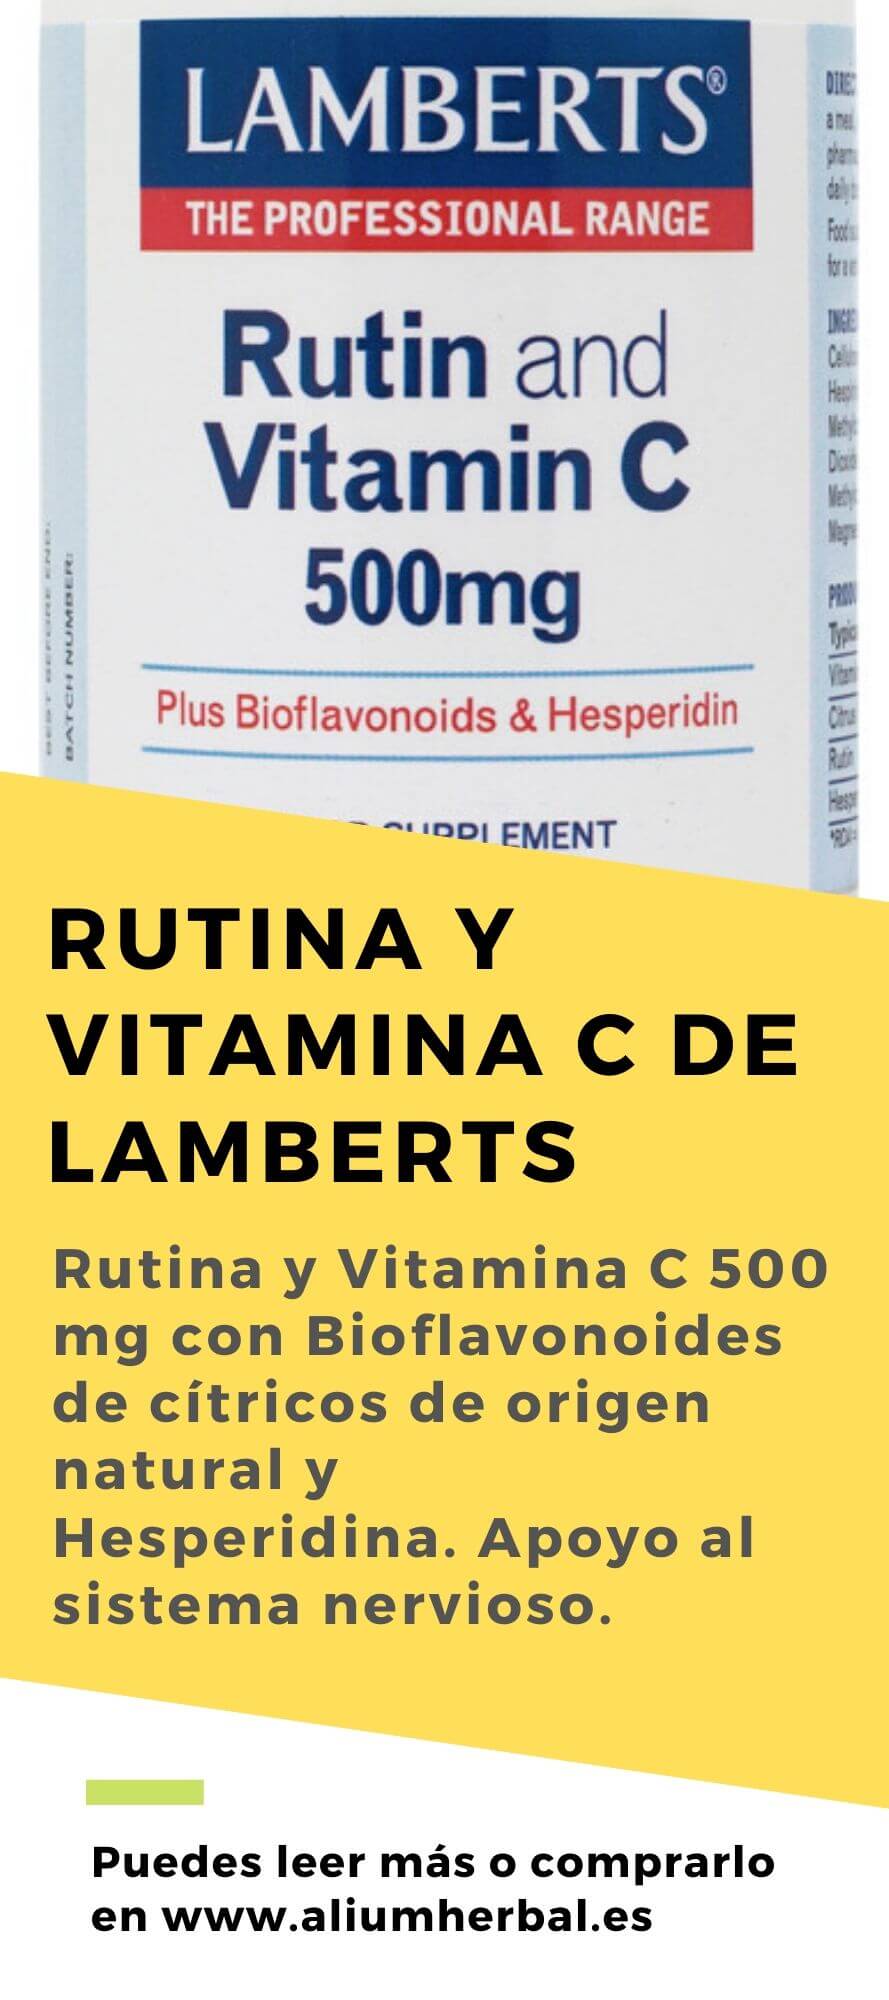 Rutina y Vitamina C 500 mg con Bioflavonoides y Hesperidina 90 tabletas de Lamberts